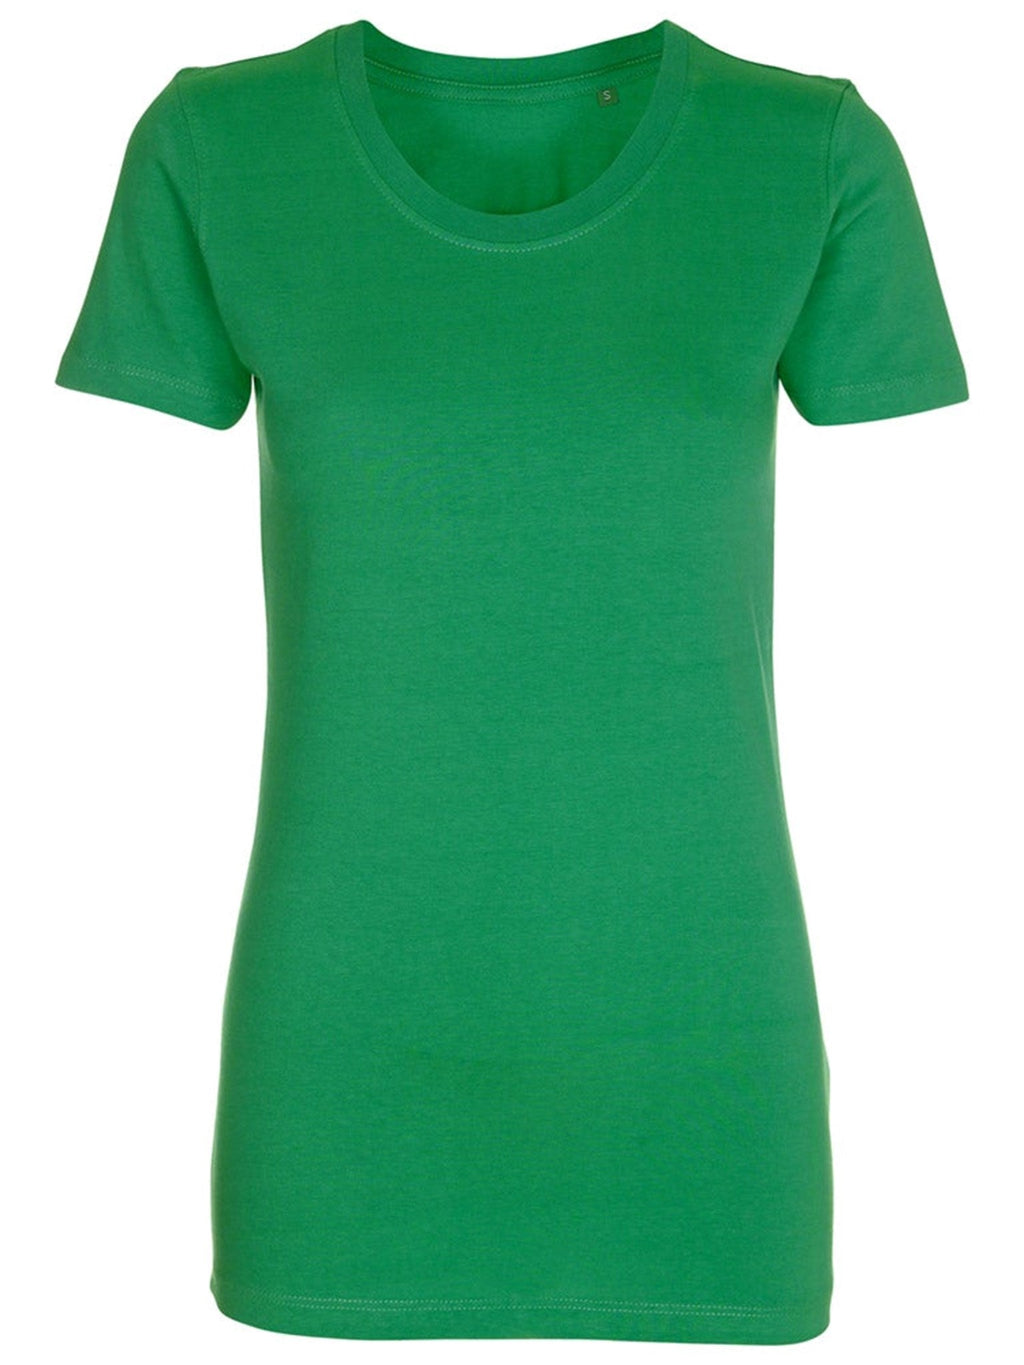 T-shirt ajusté - vert